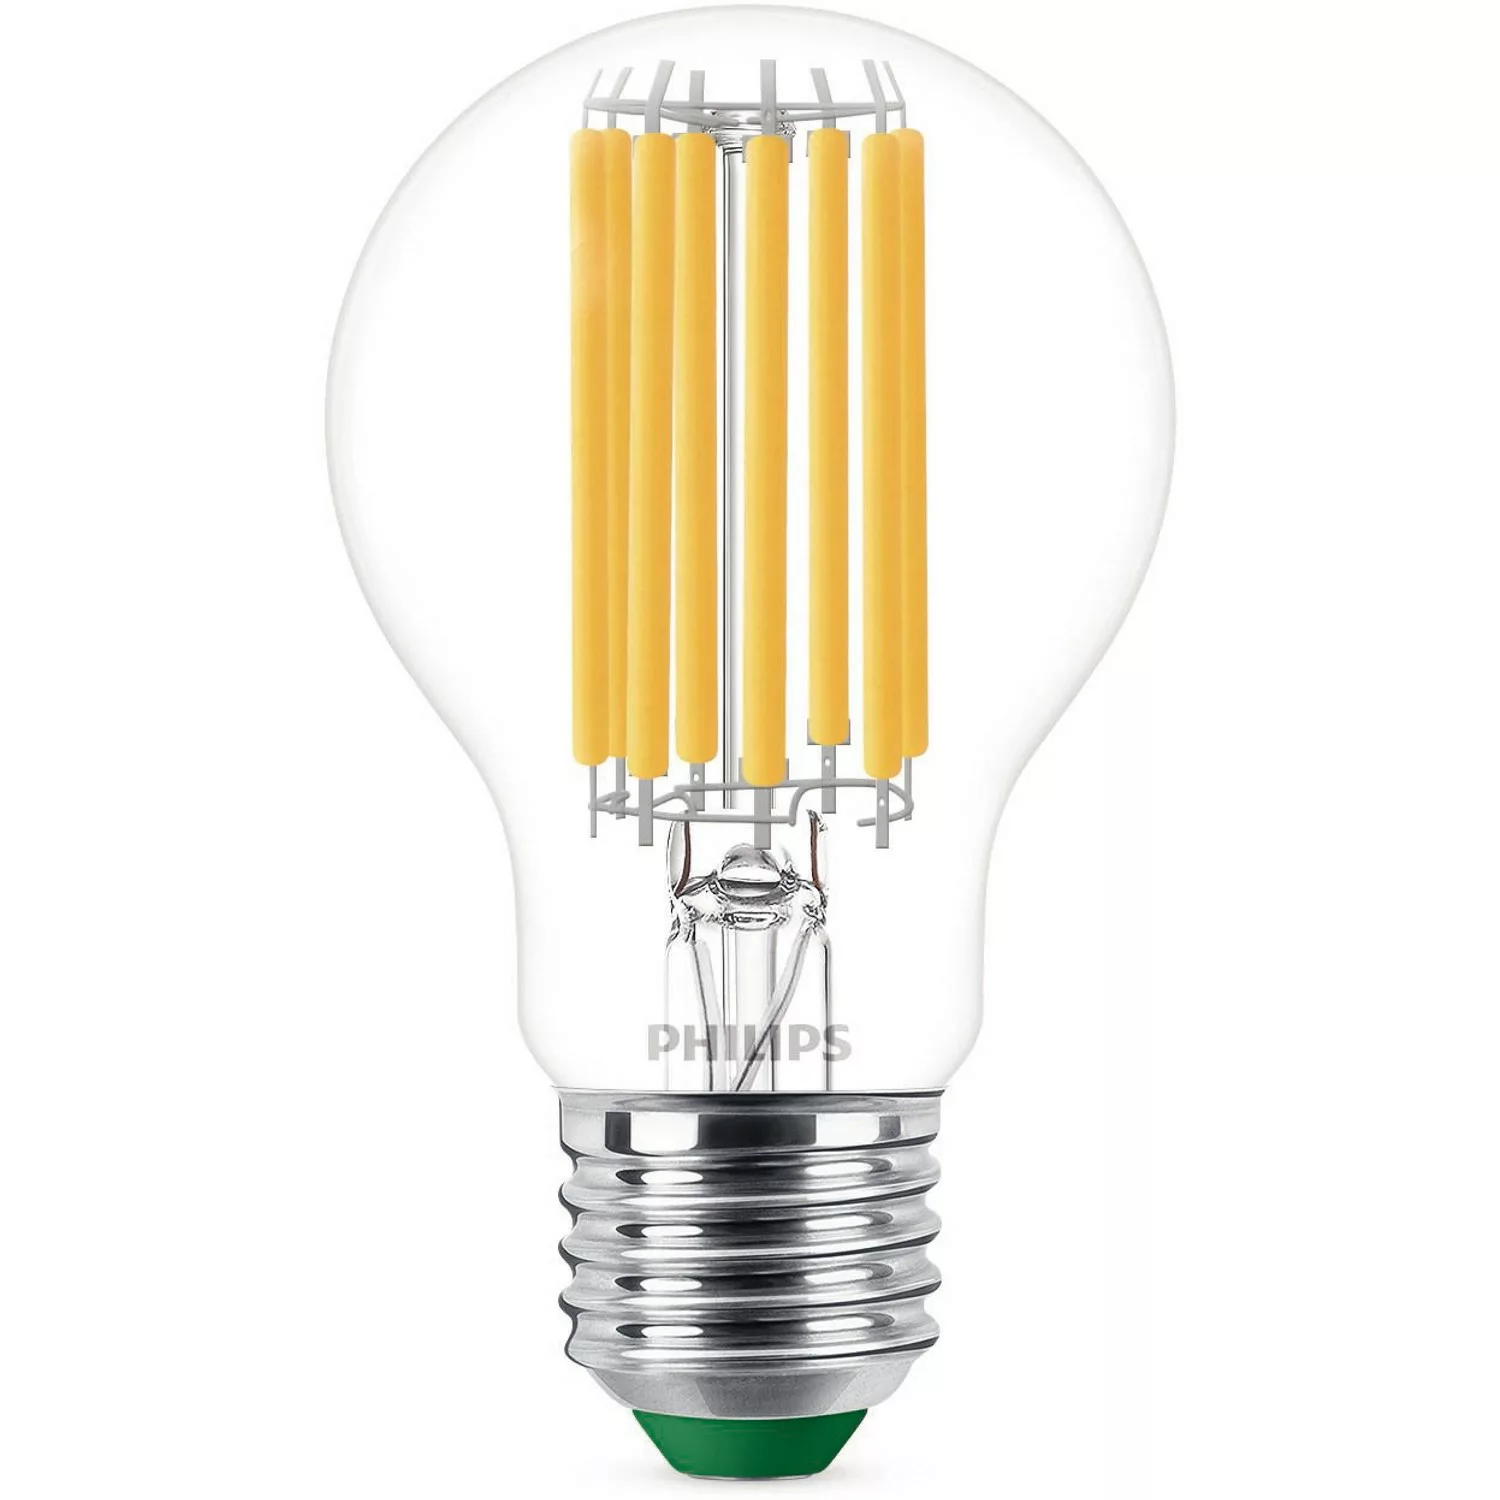 Philips LED-Leuchtmittel E27 Glühlampenform 7,3W 1535lm Klar Warmweiß 10,5x günstig online kaufen